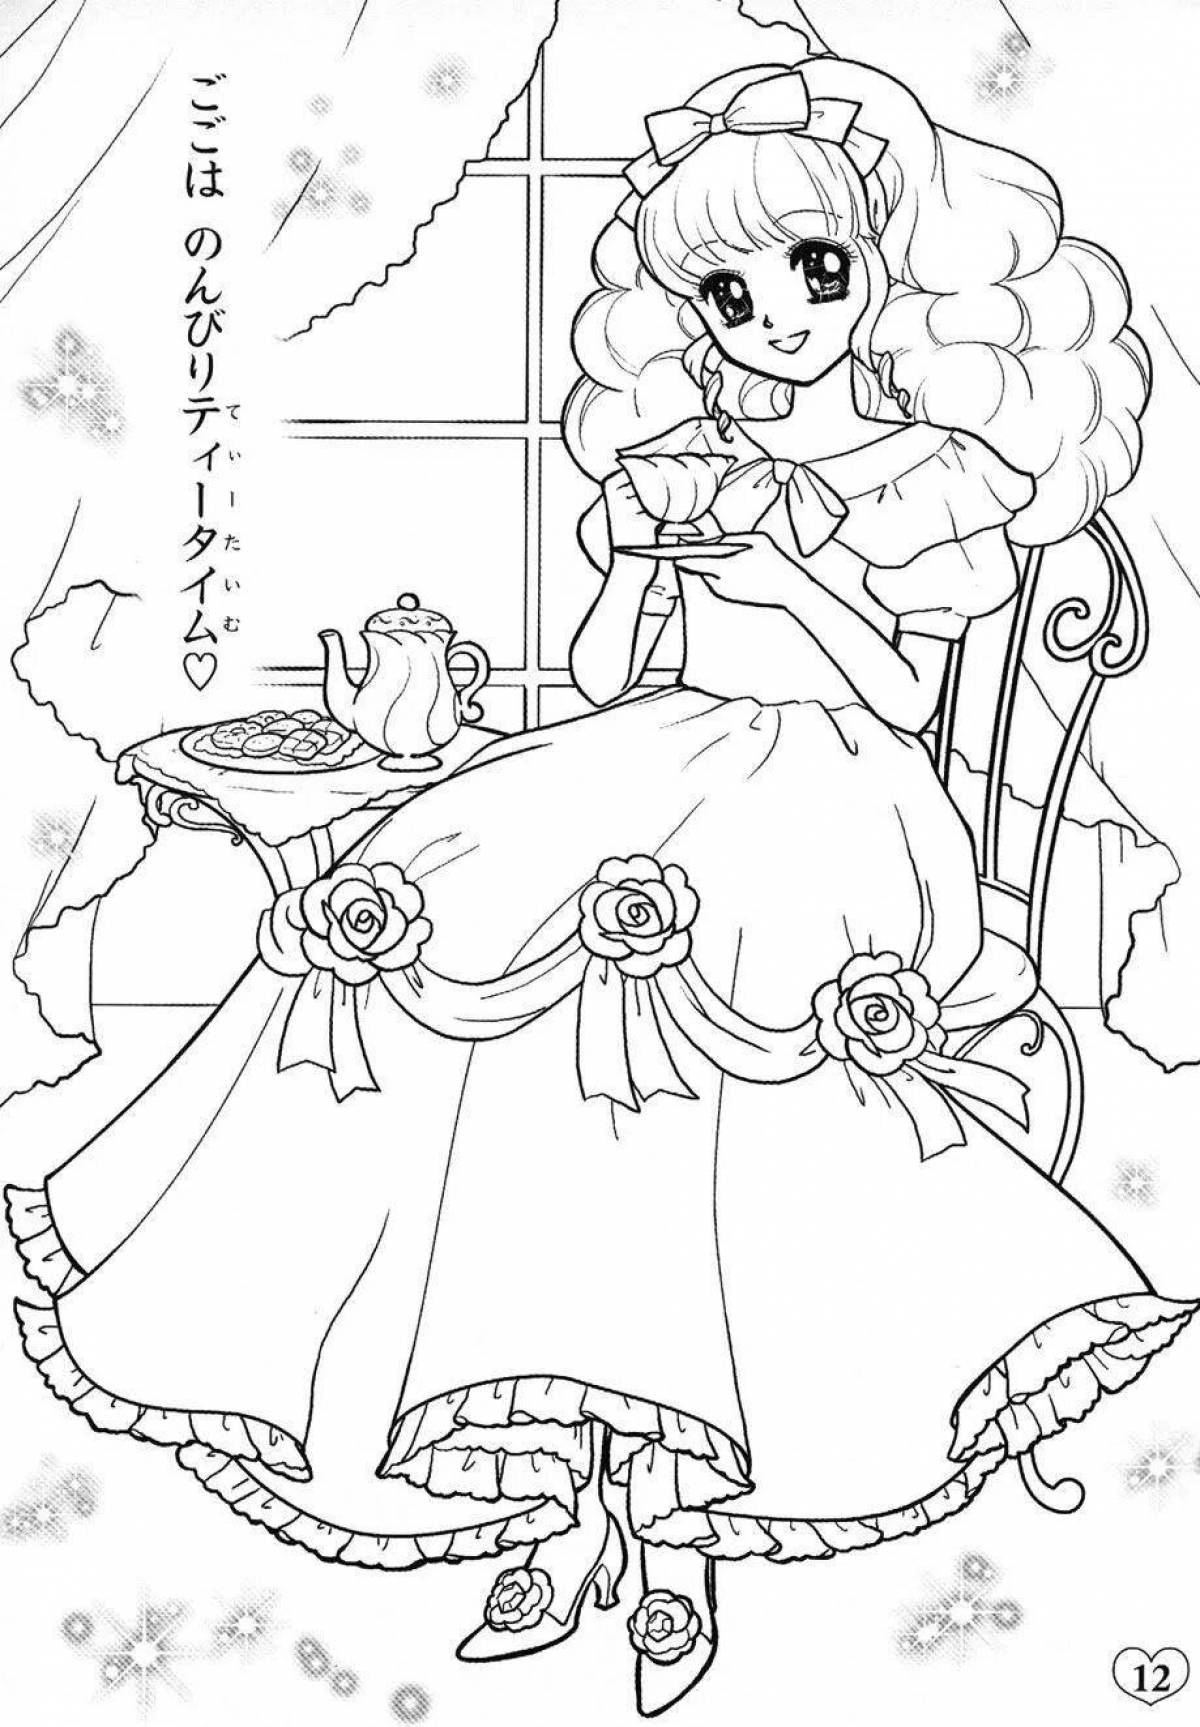 Очаровательная страница раскраски принцессы сисси